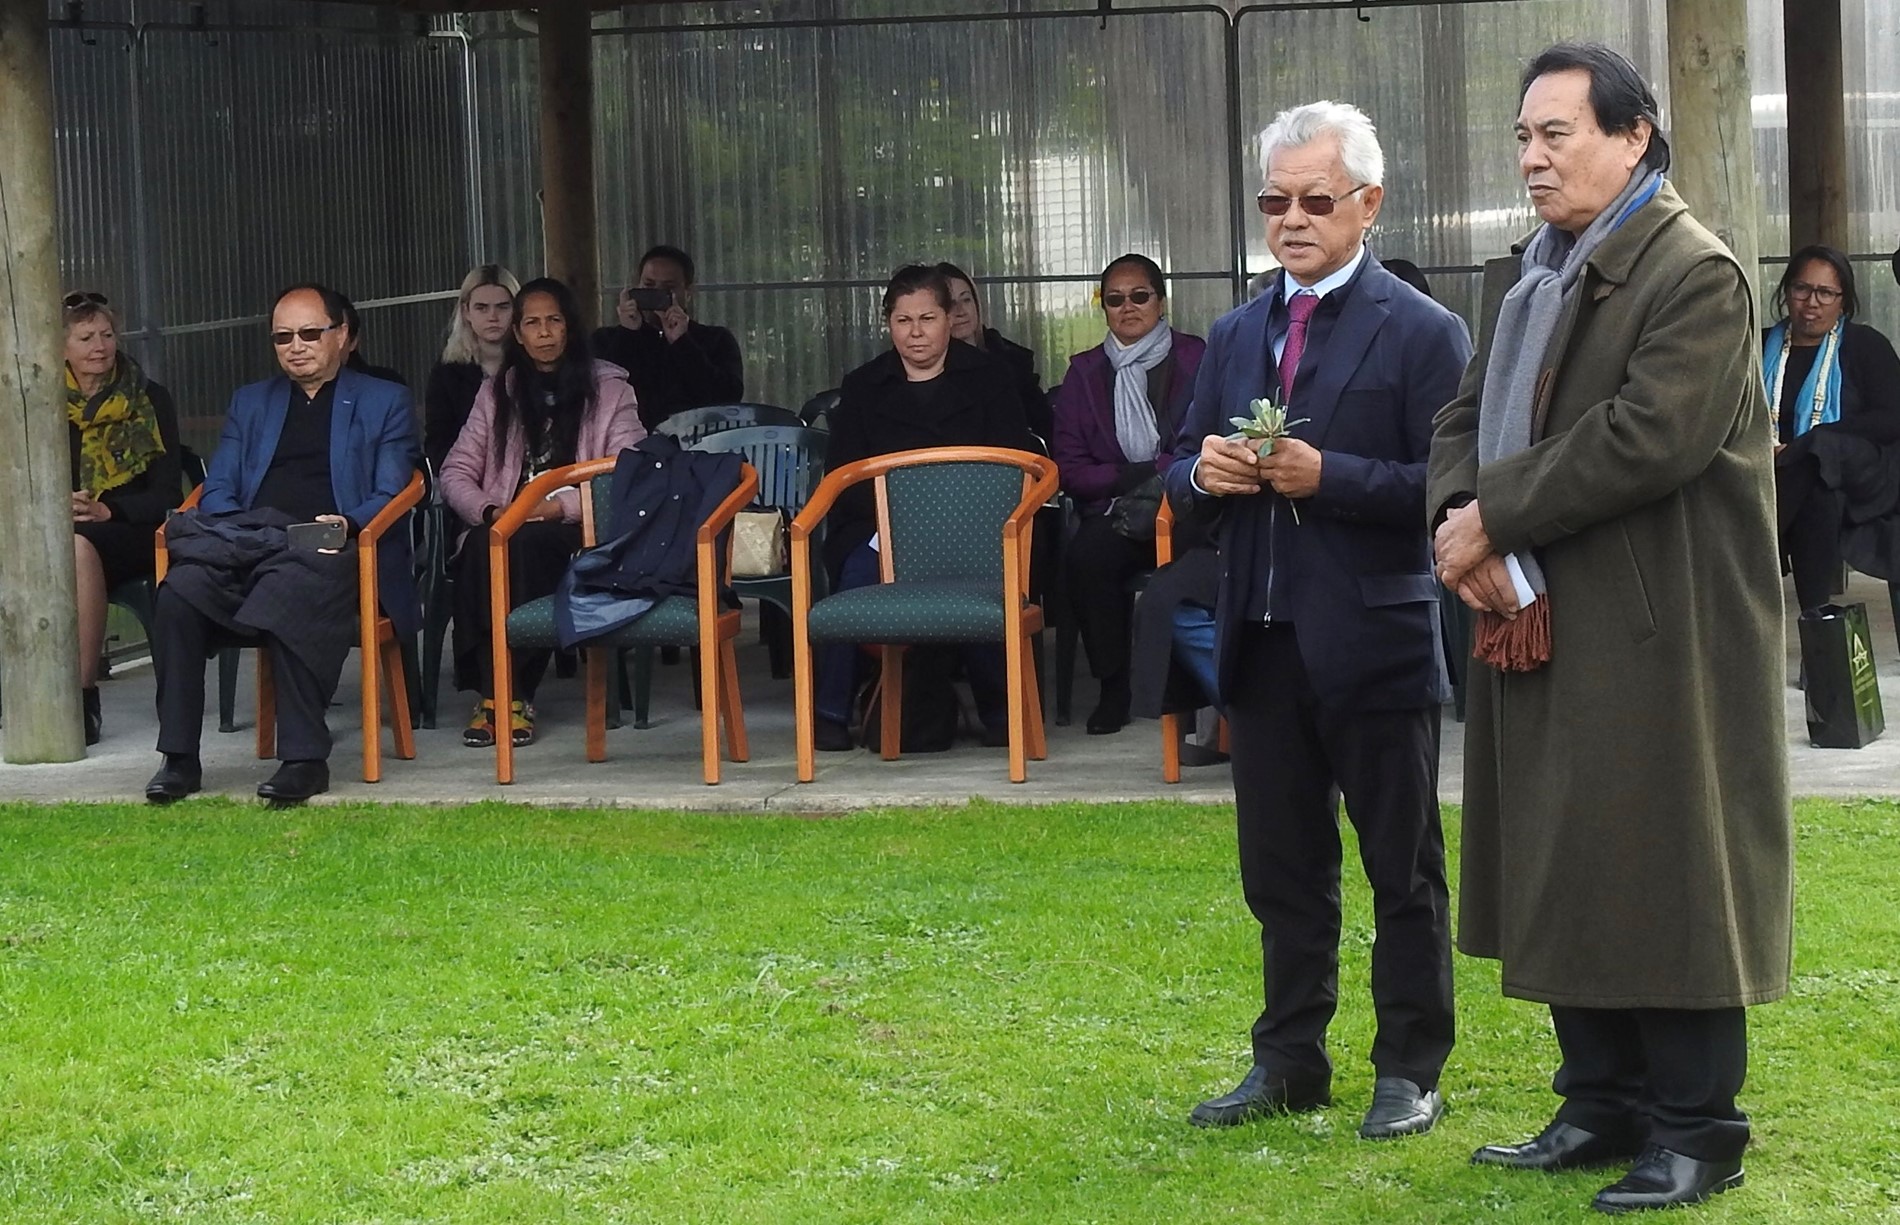 Coopération régionale : Vers un partenariat entre les assemblées de Polynésie et Nouvelle-Zélande